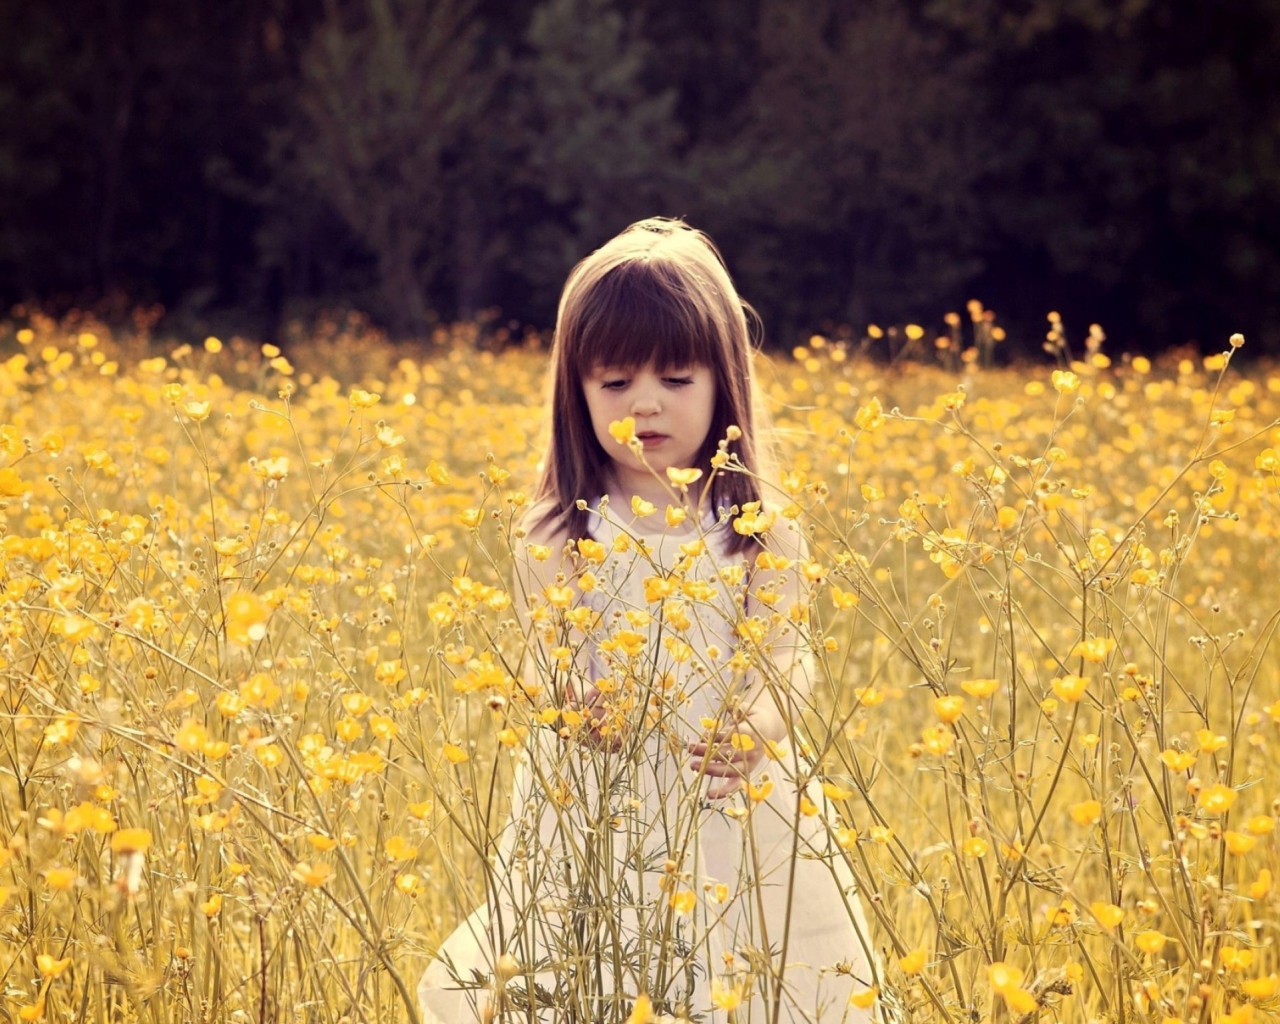 Das Cute Little Girl In Flower Field Wallpaper 1280x1024